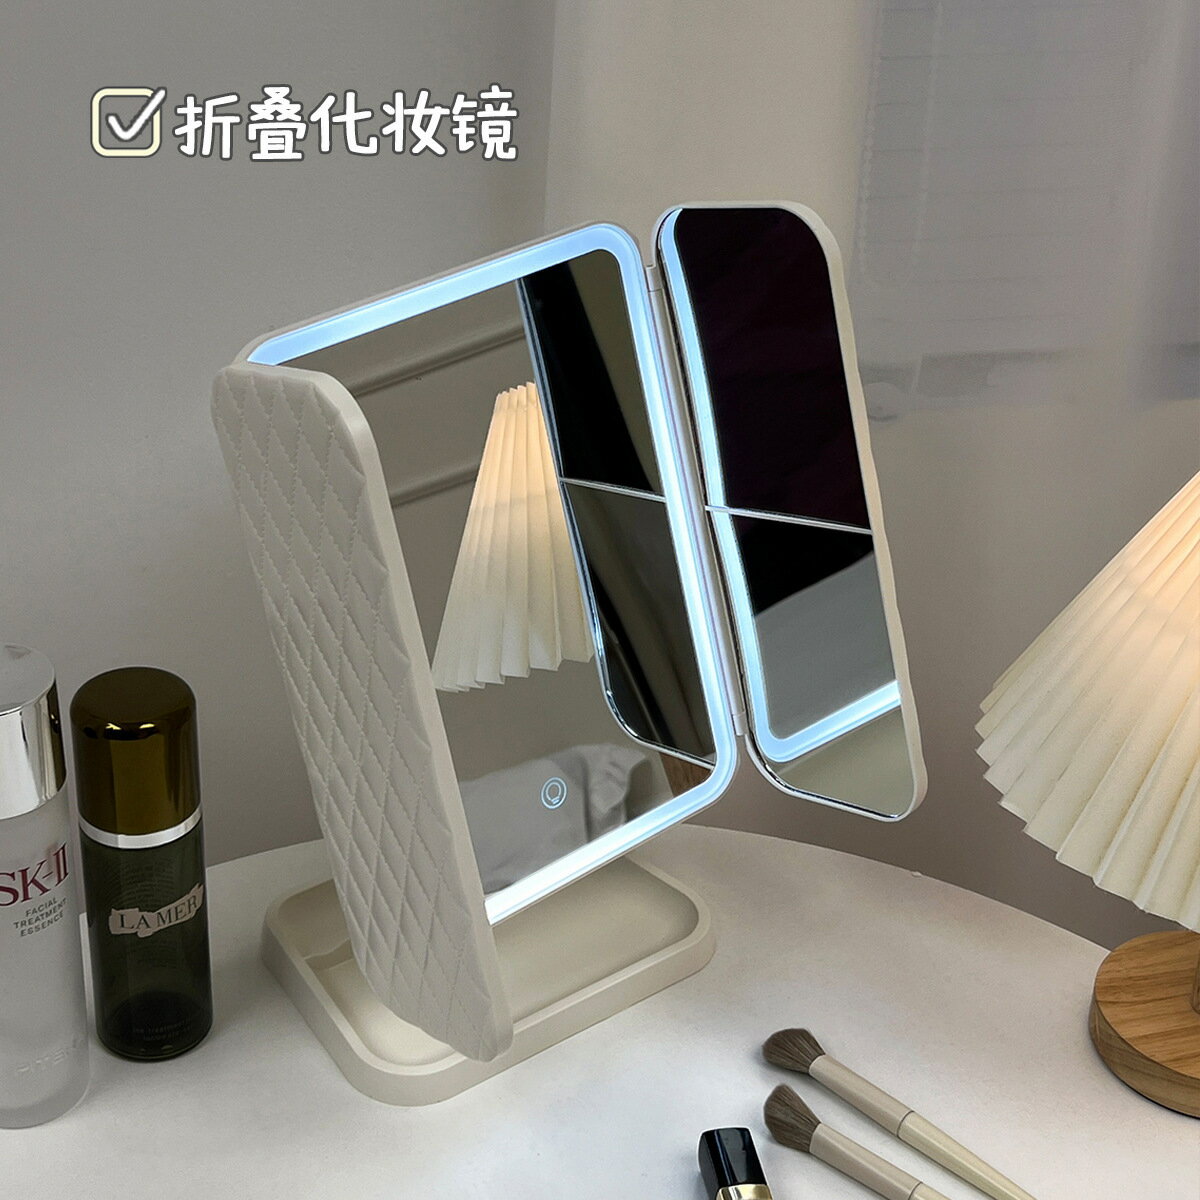 臺式旅游led化妝鏡帶燈收納盒二合一體式折疊貝殼可鏡子梳妝仙女